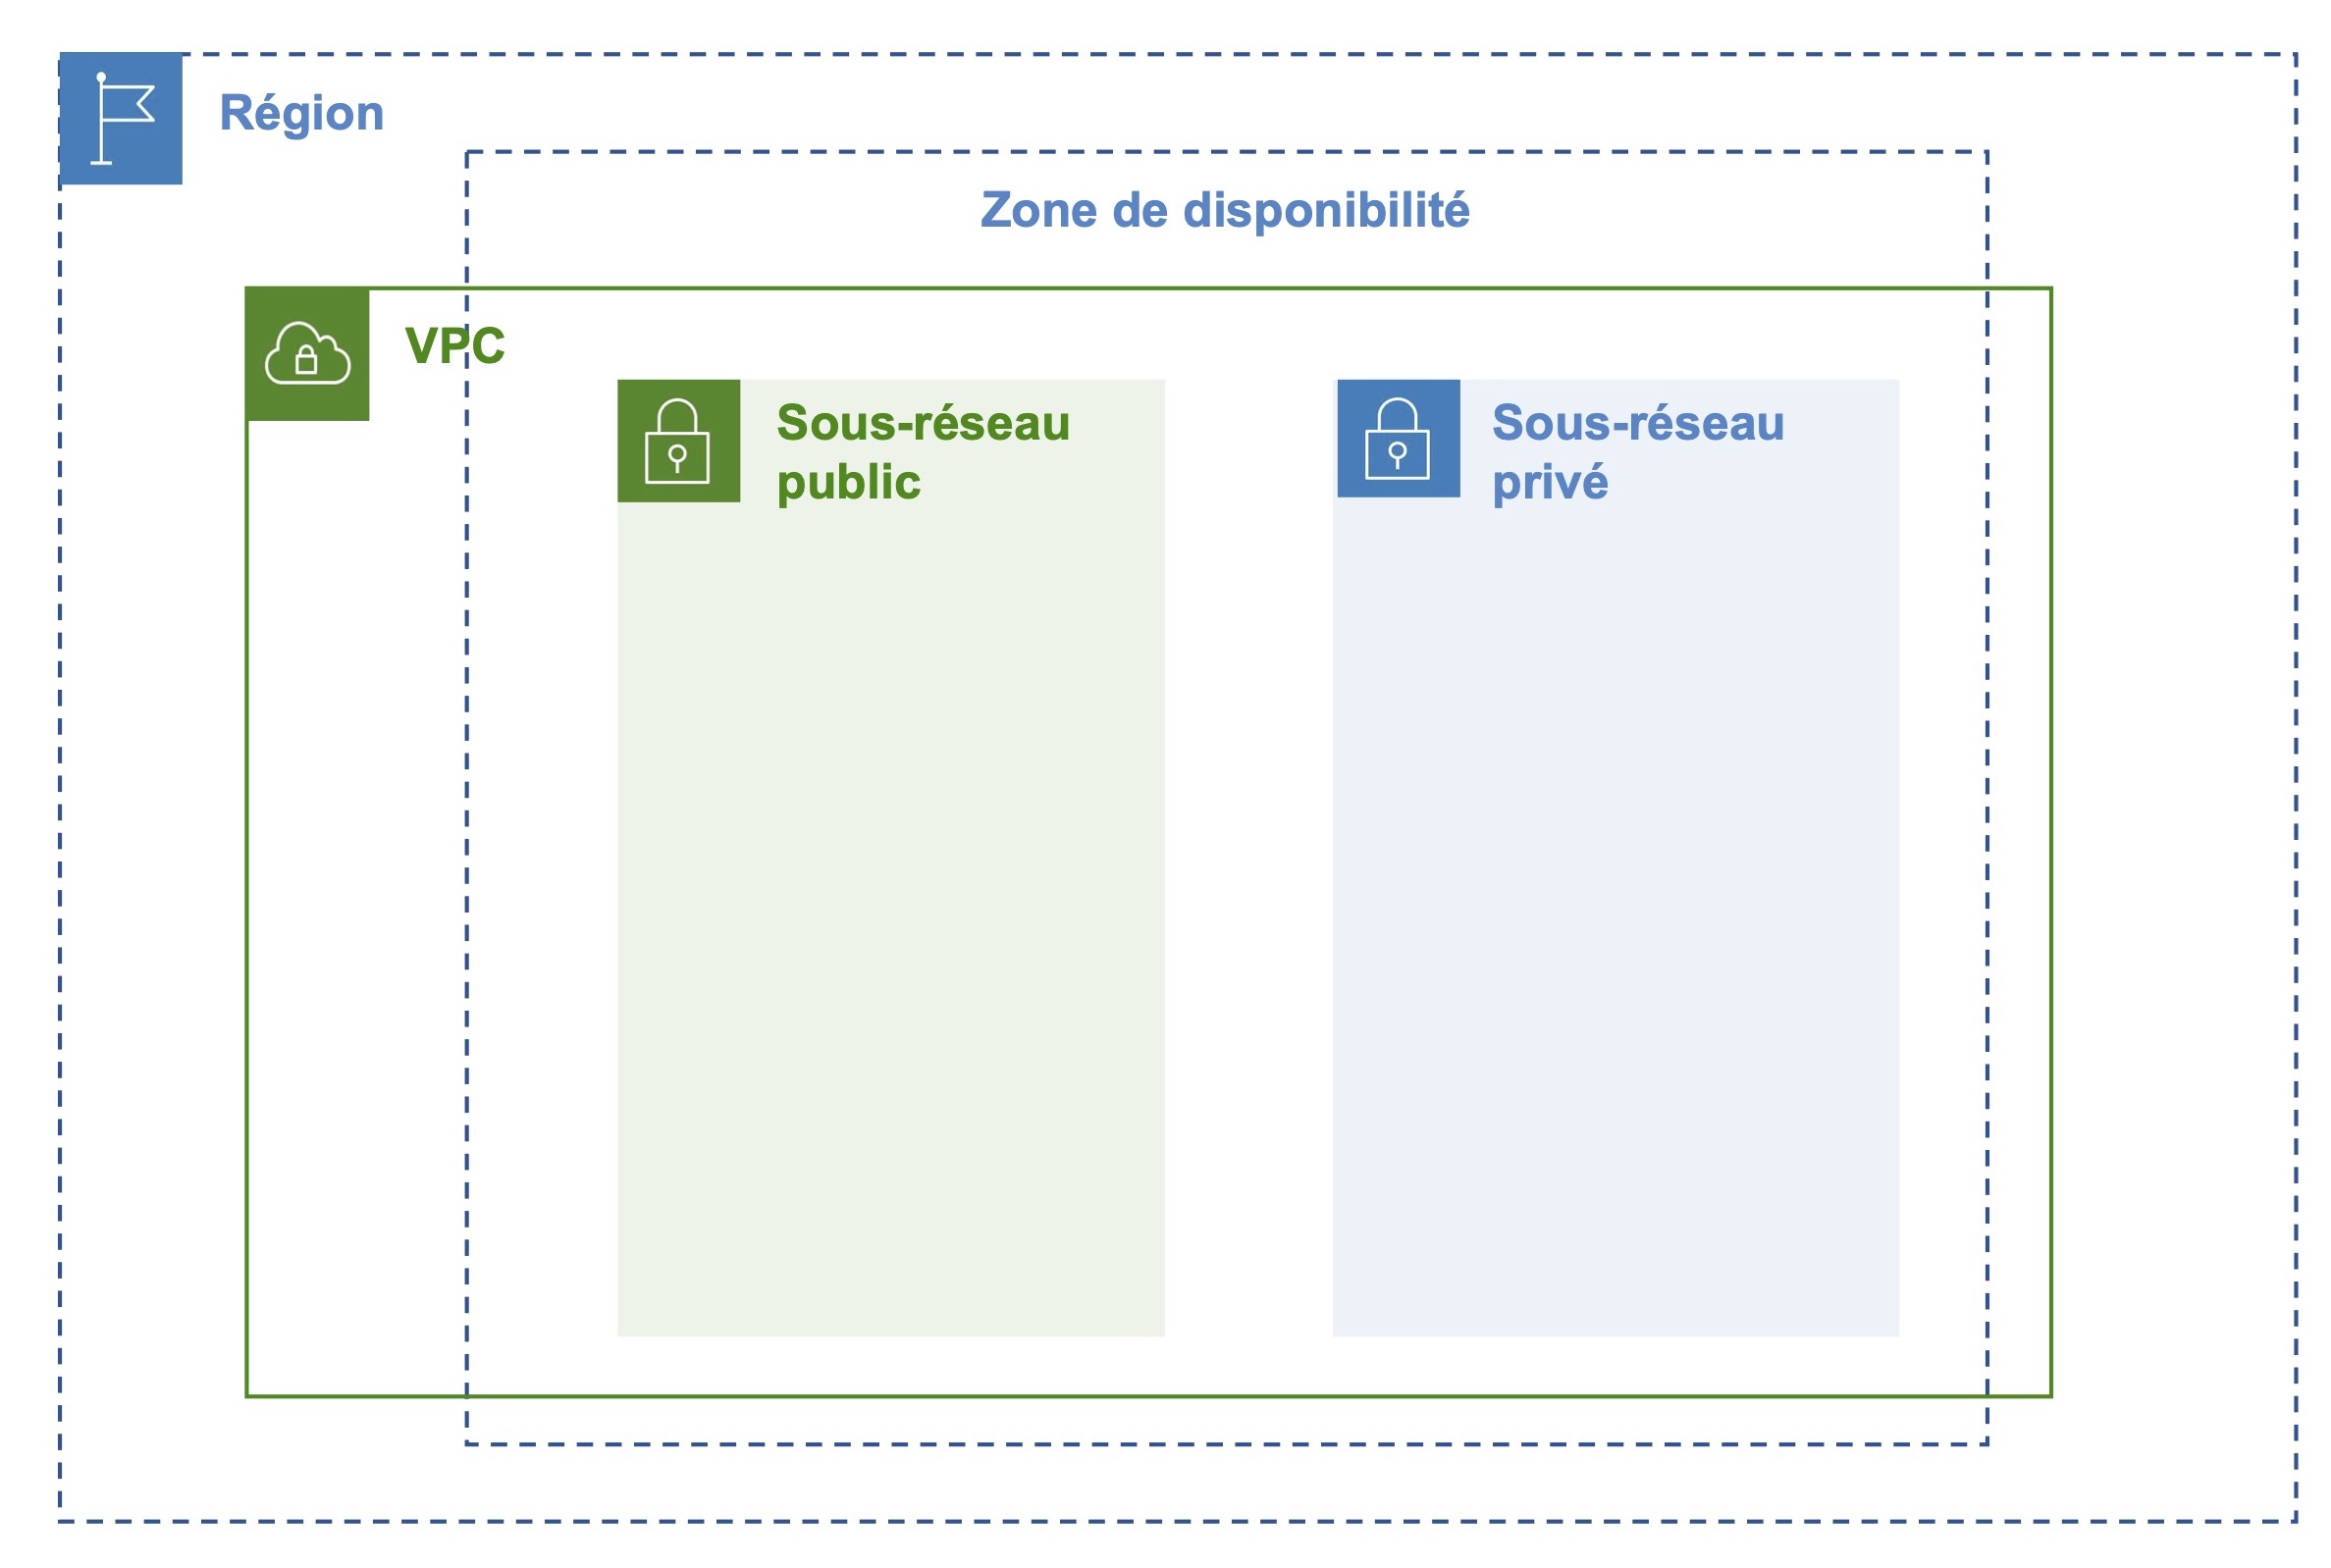 Un rectangle vert  “VPC” en ligne continue Un rectangle bleu “Région” en pointillés et qui englobe le rectangle vert “VPC” Un rectangle bleu “Zone de disponibilité en pointillés entre “Région” et “VPC” Deux rectangles côte à c